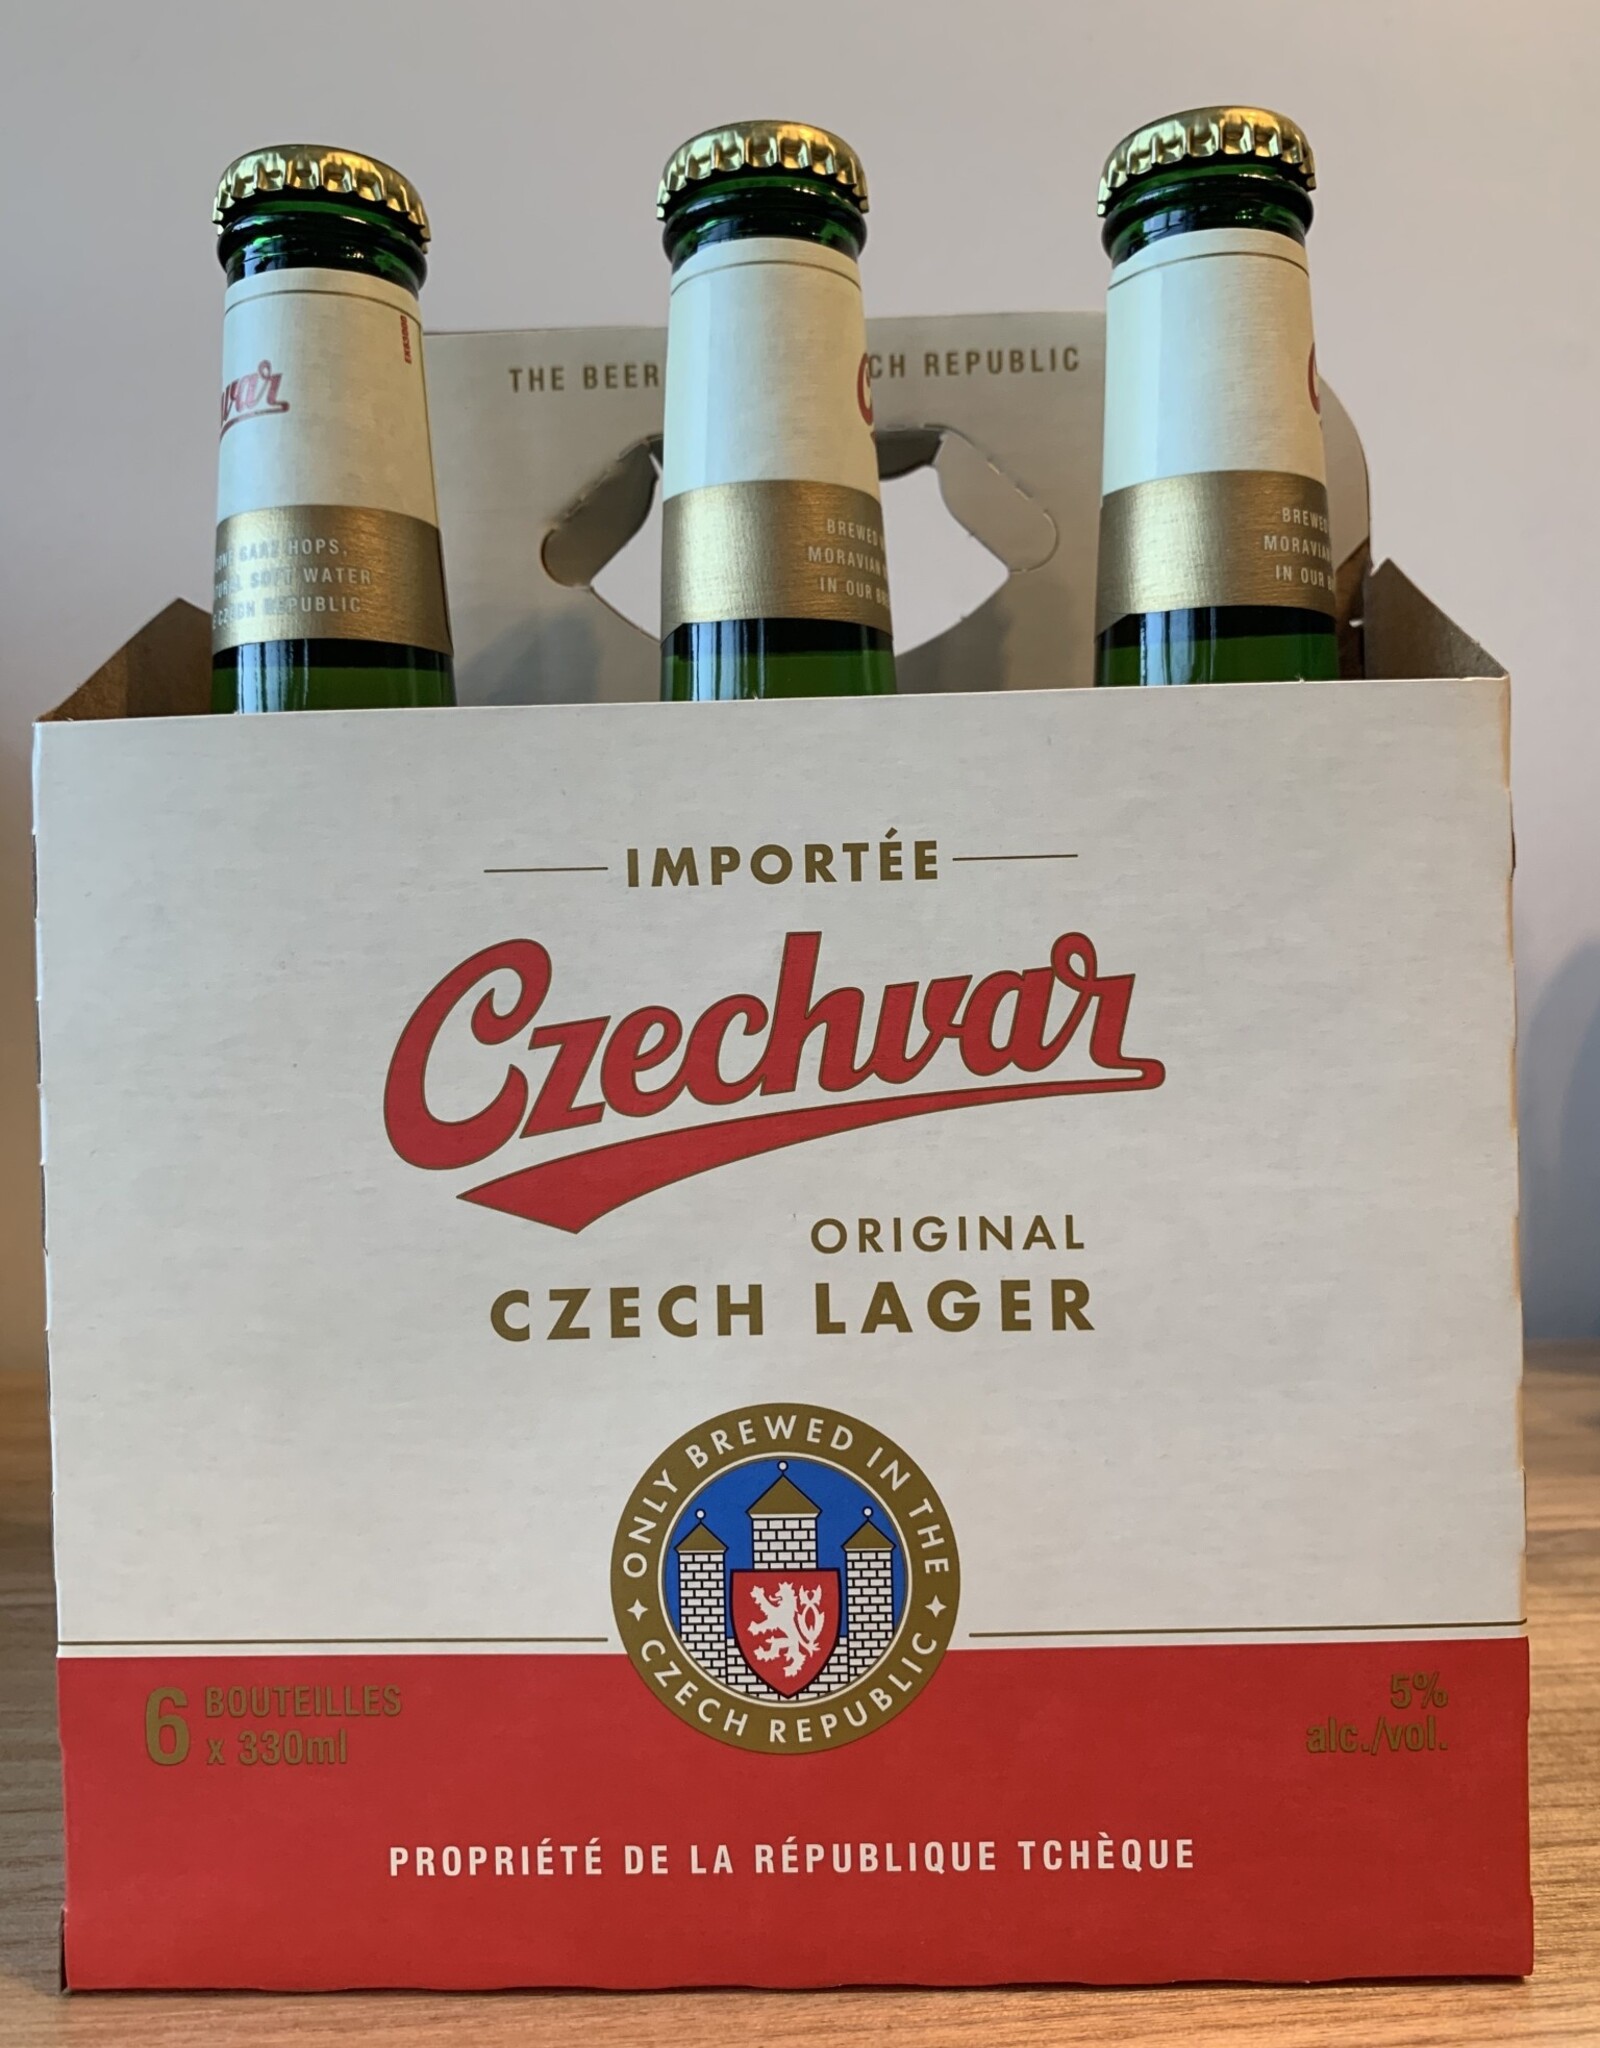 Czechvar Czechvar Czech Lager